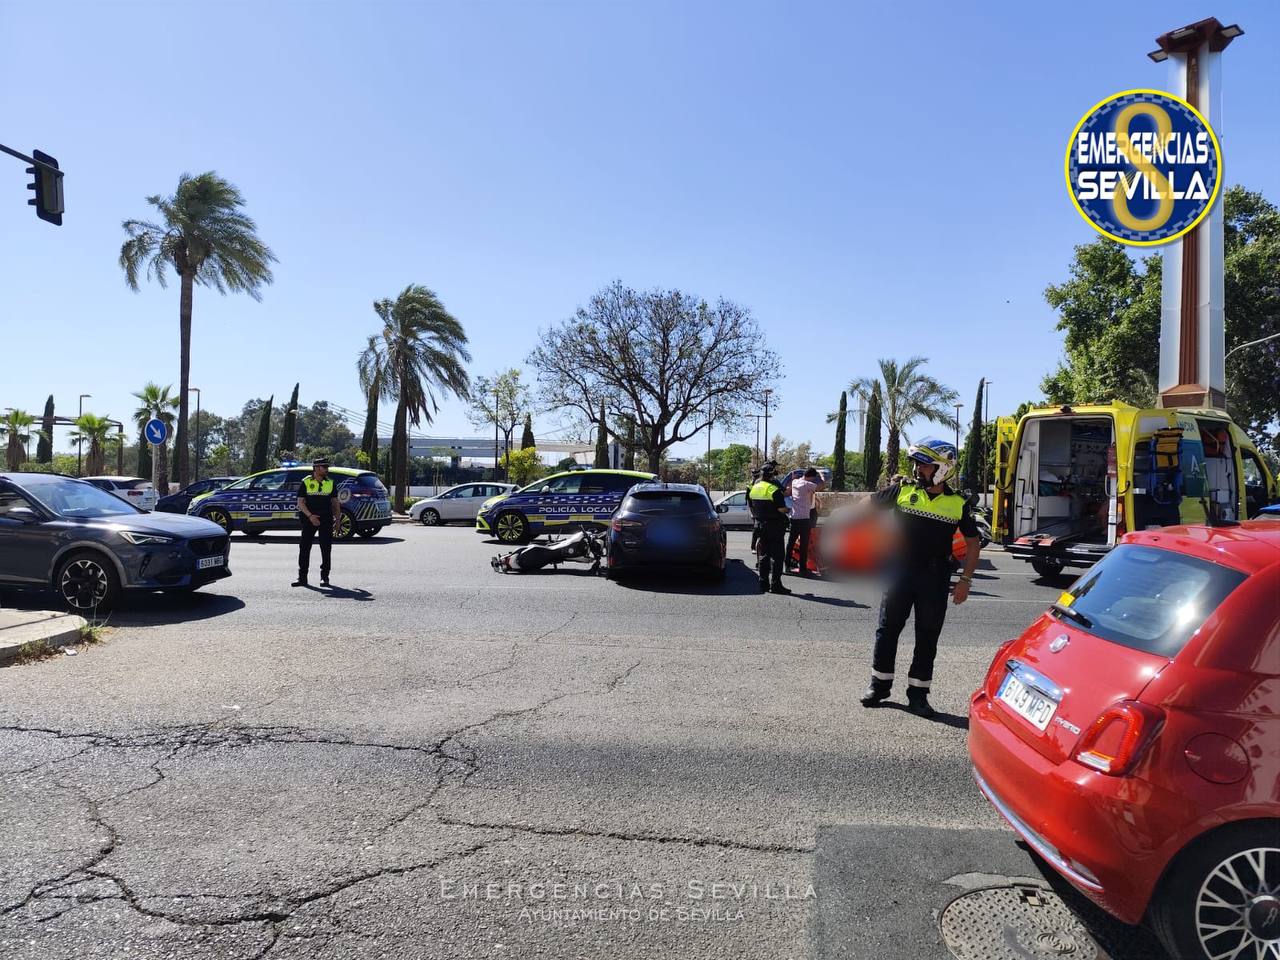 Imagen compartida por Emergencias Sevilla del accidente ocurrido en la calle Torneo.